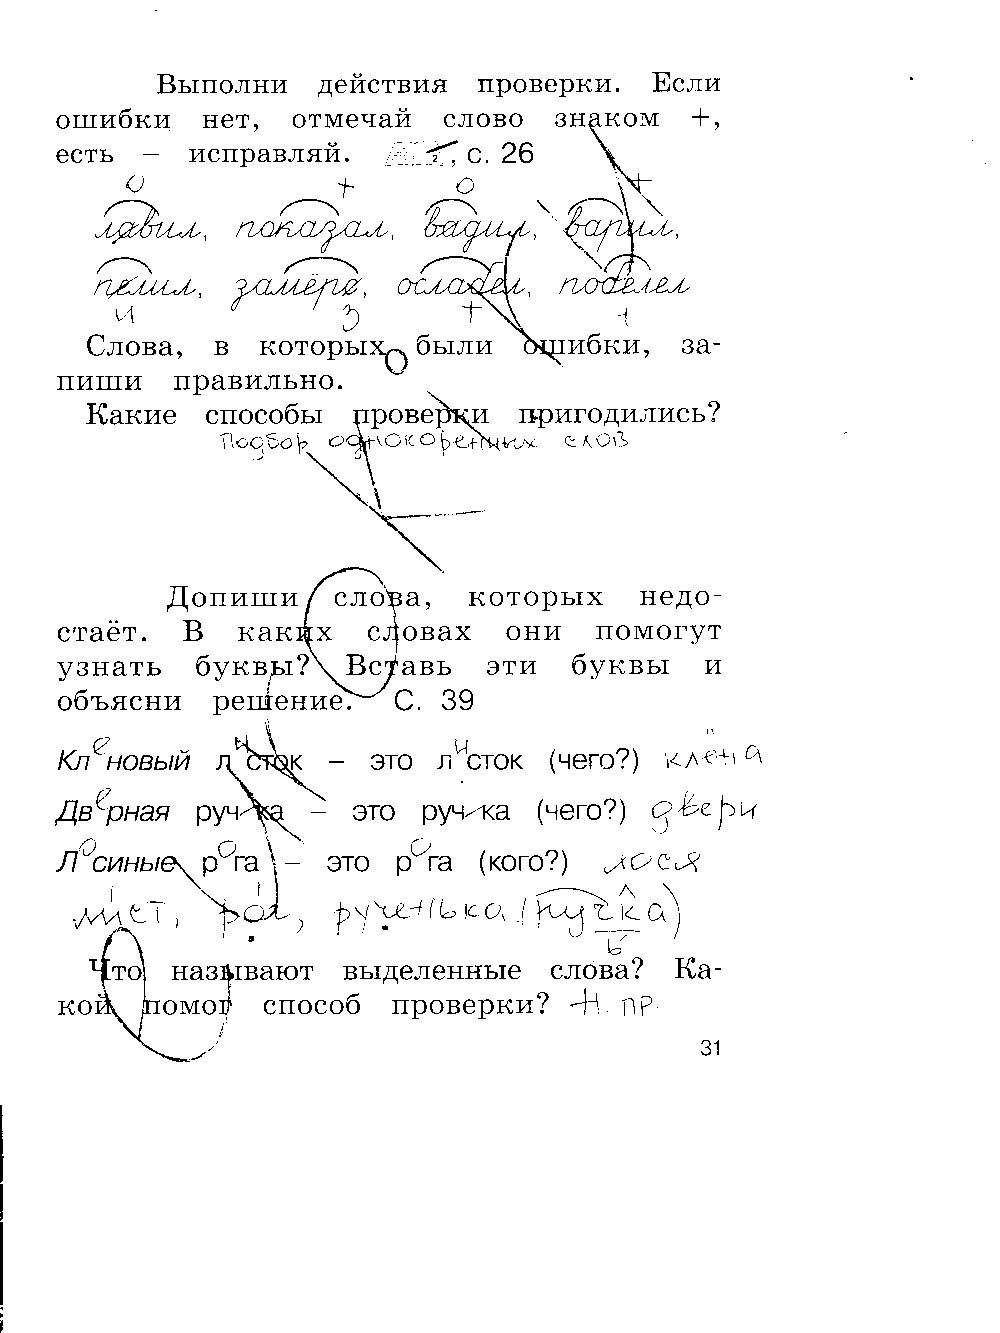 ГДЗ Русский язык 2 класс - стр. 31